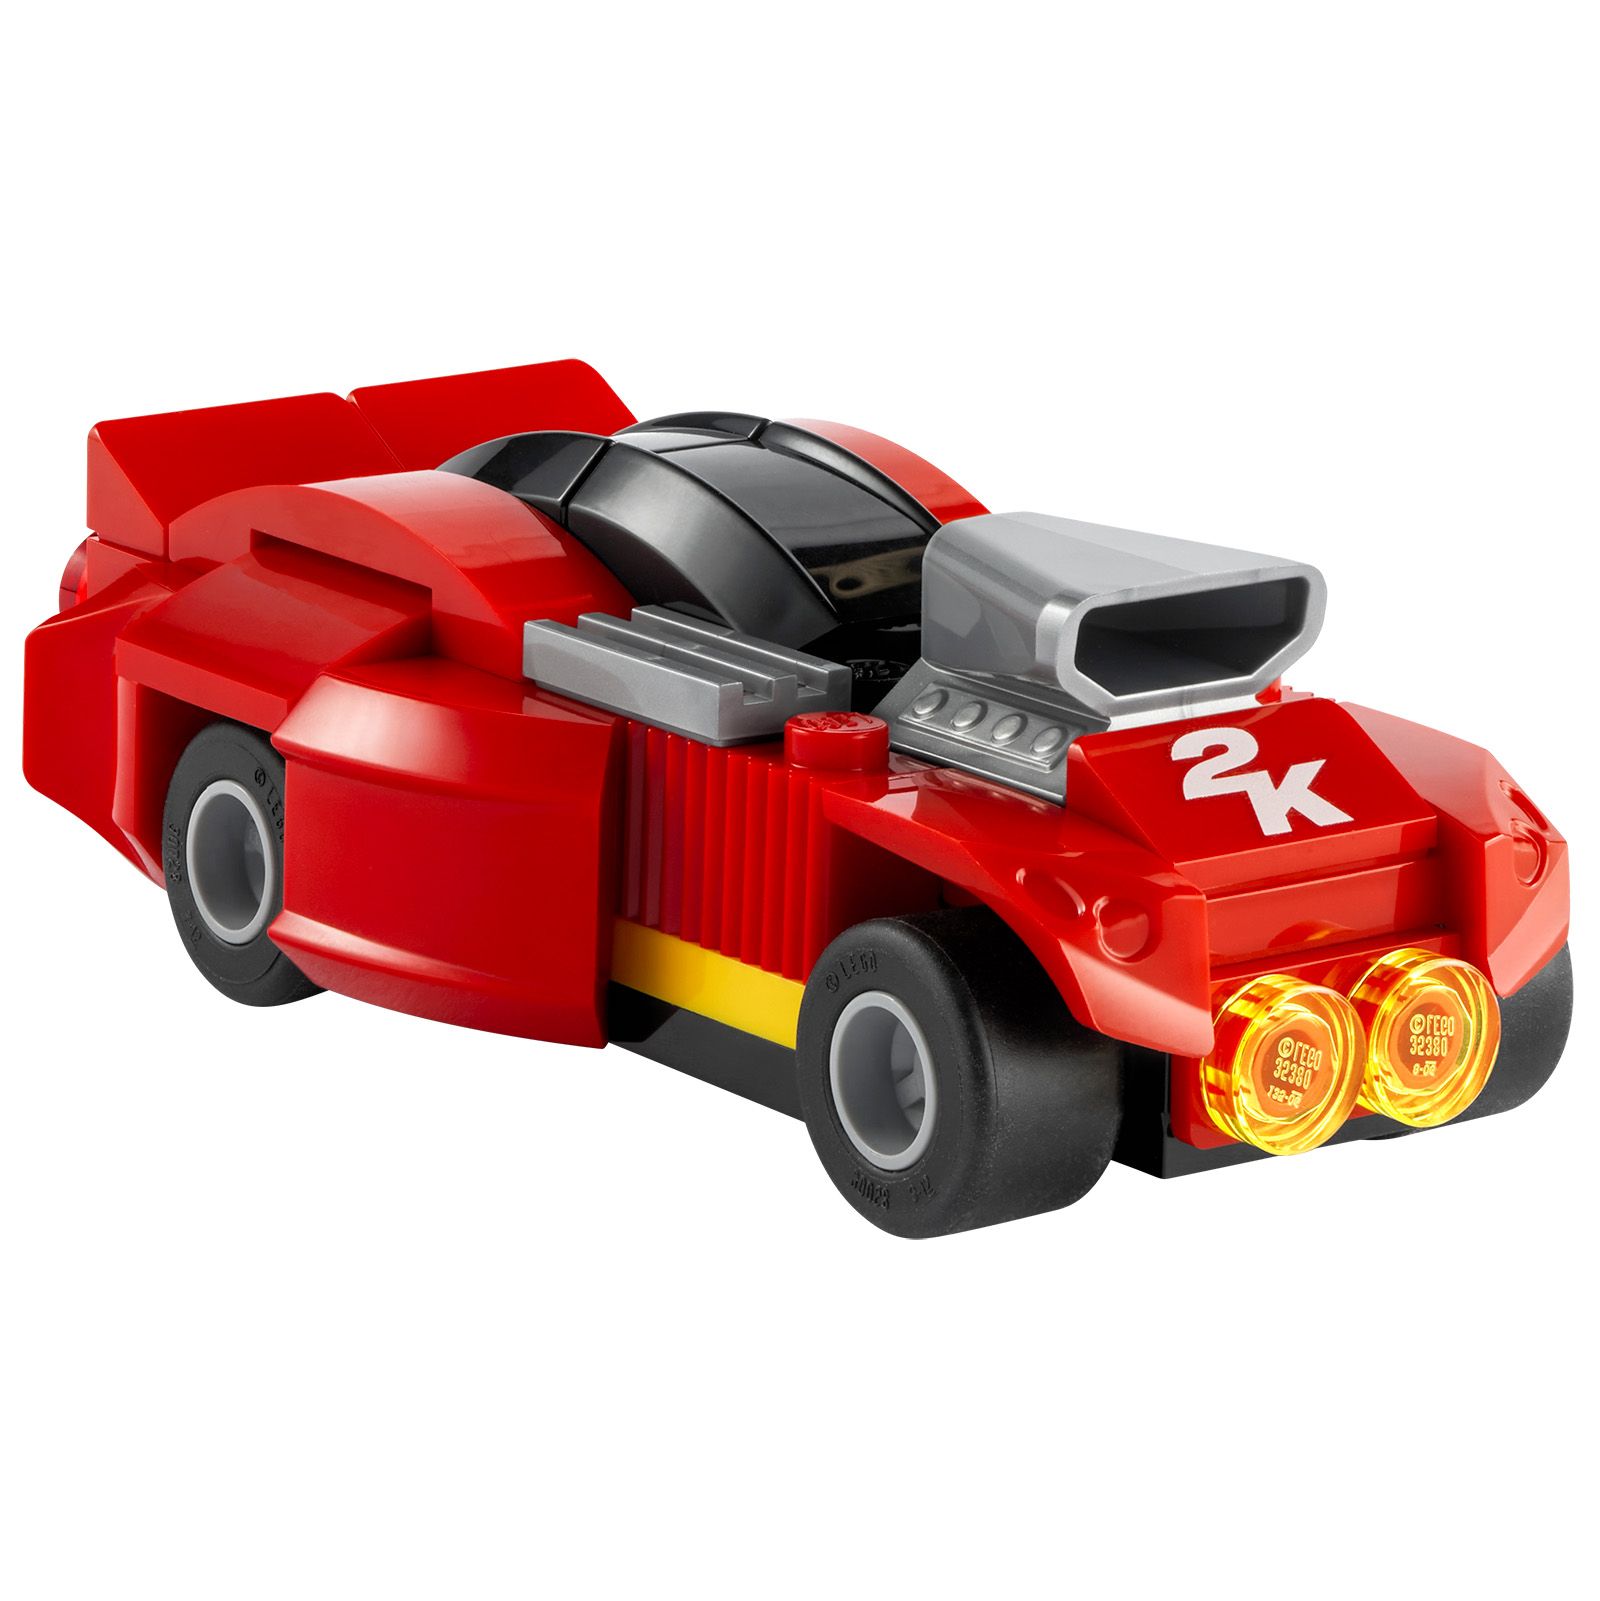 LEGO 2K Drive: یک تریلر و یک محصول LEGO ارائه شده با نسخه های فیزیکی خاصی از بازی ویدیویی